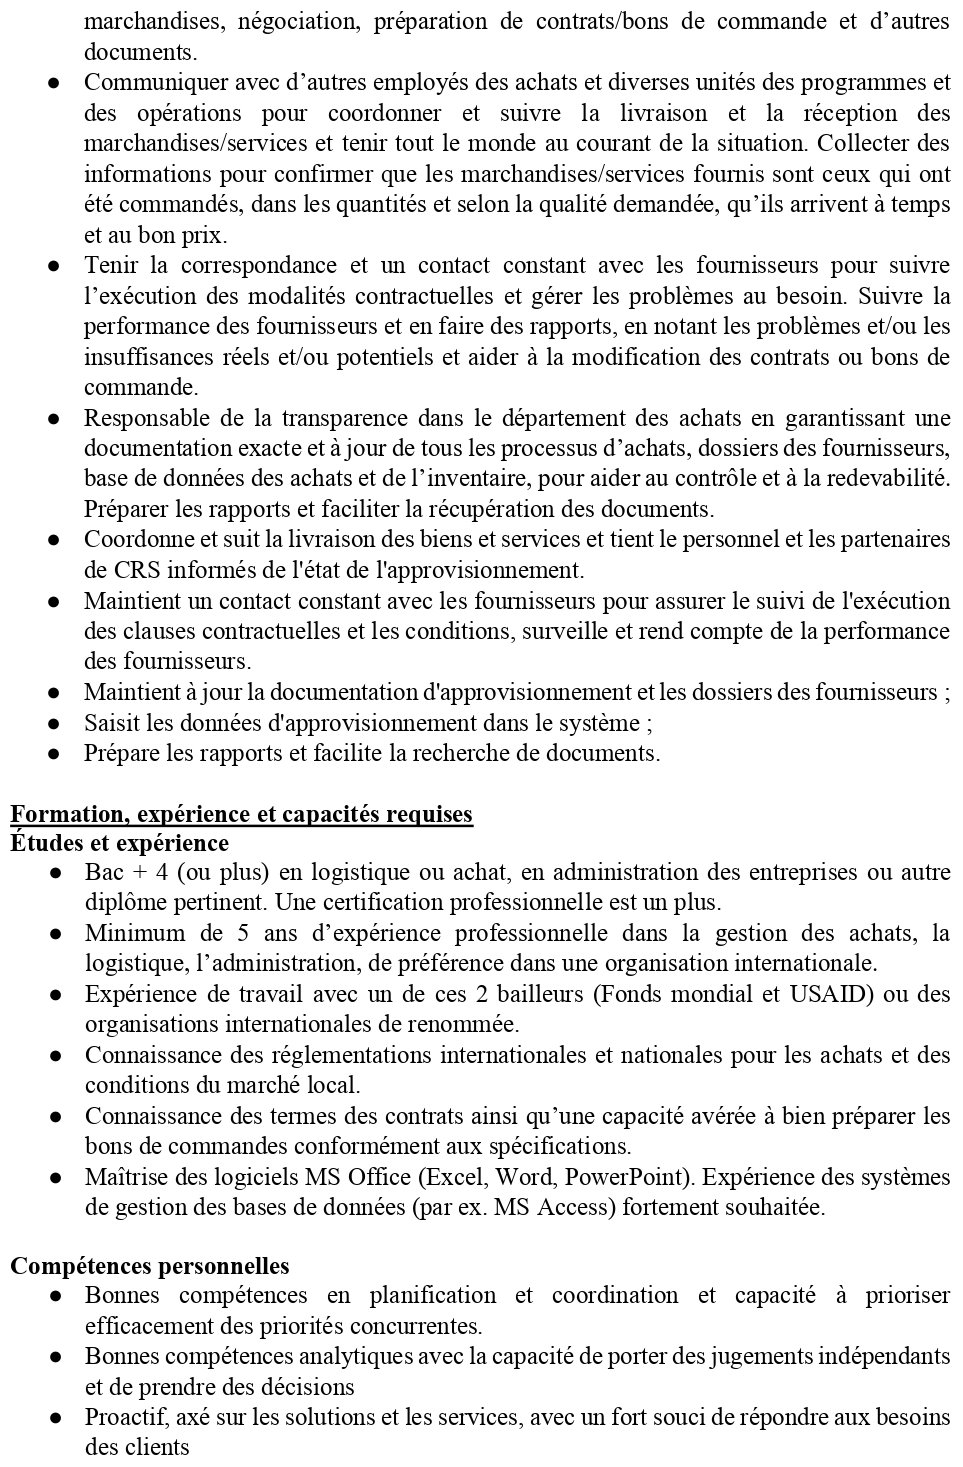 Recrutement D'un(e) Chargé(e) Des Achats/Procurement Officer | page 2